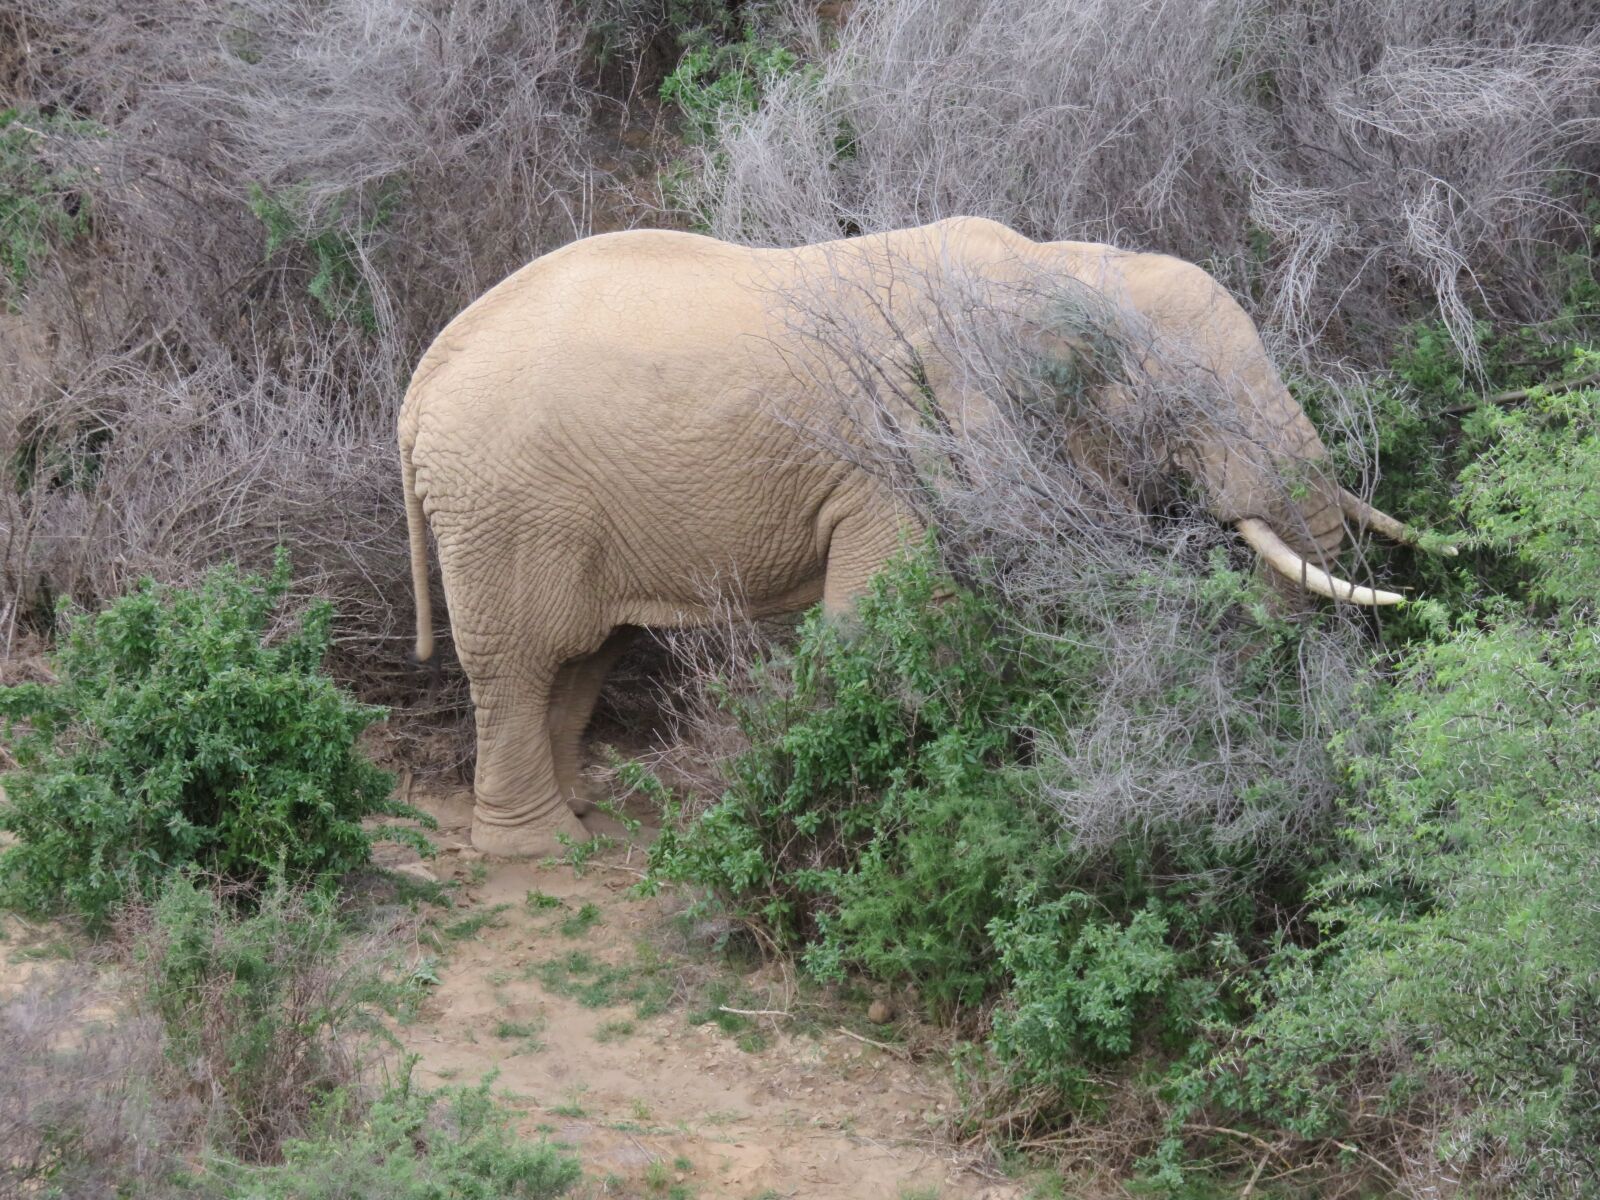 Canon PowerShot SX710 HS sample photo. Elephant, tusk, africa photography